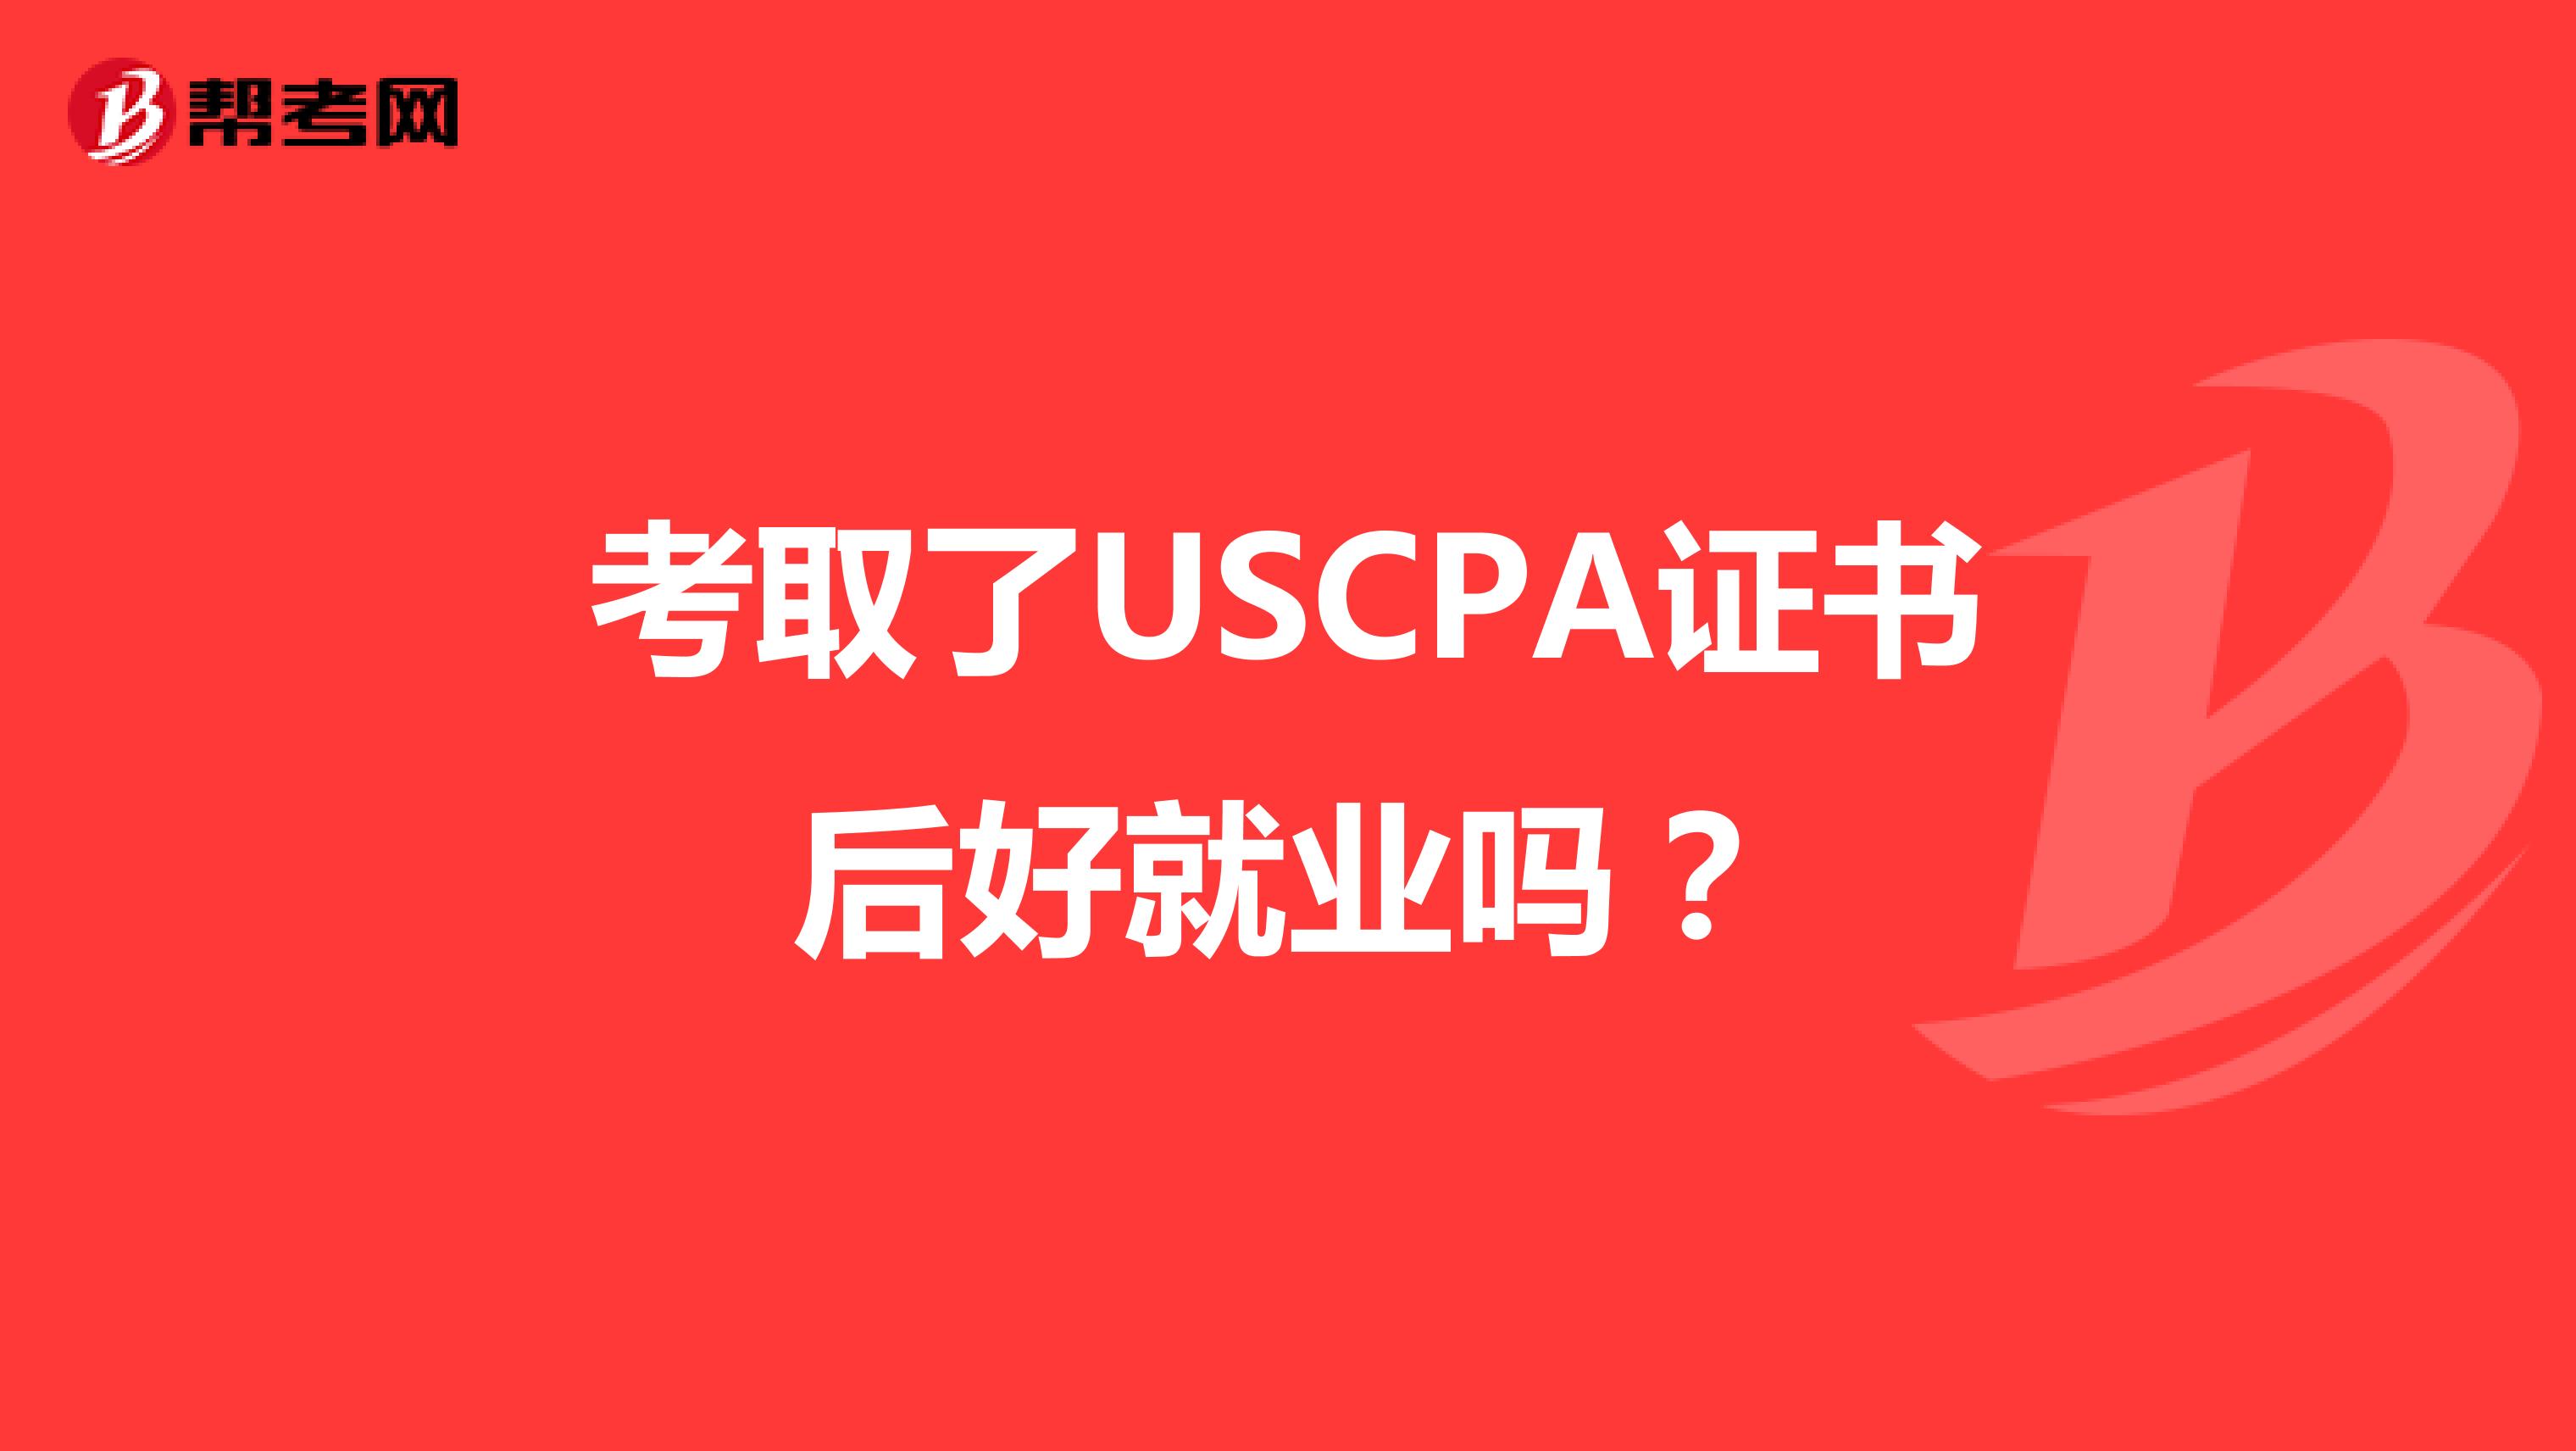 考取了USCPA证书后好就业吗？